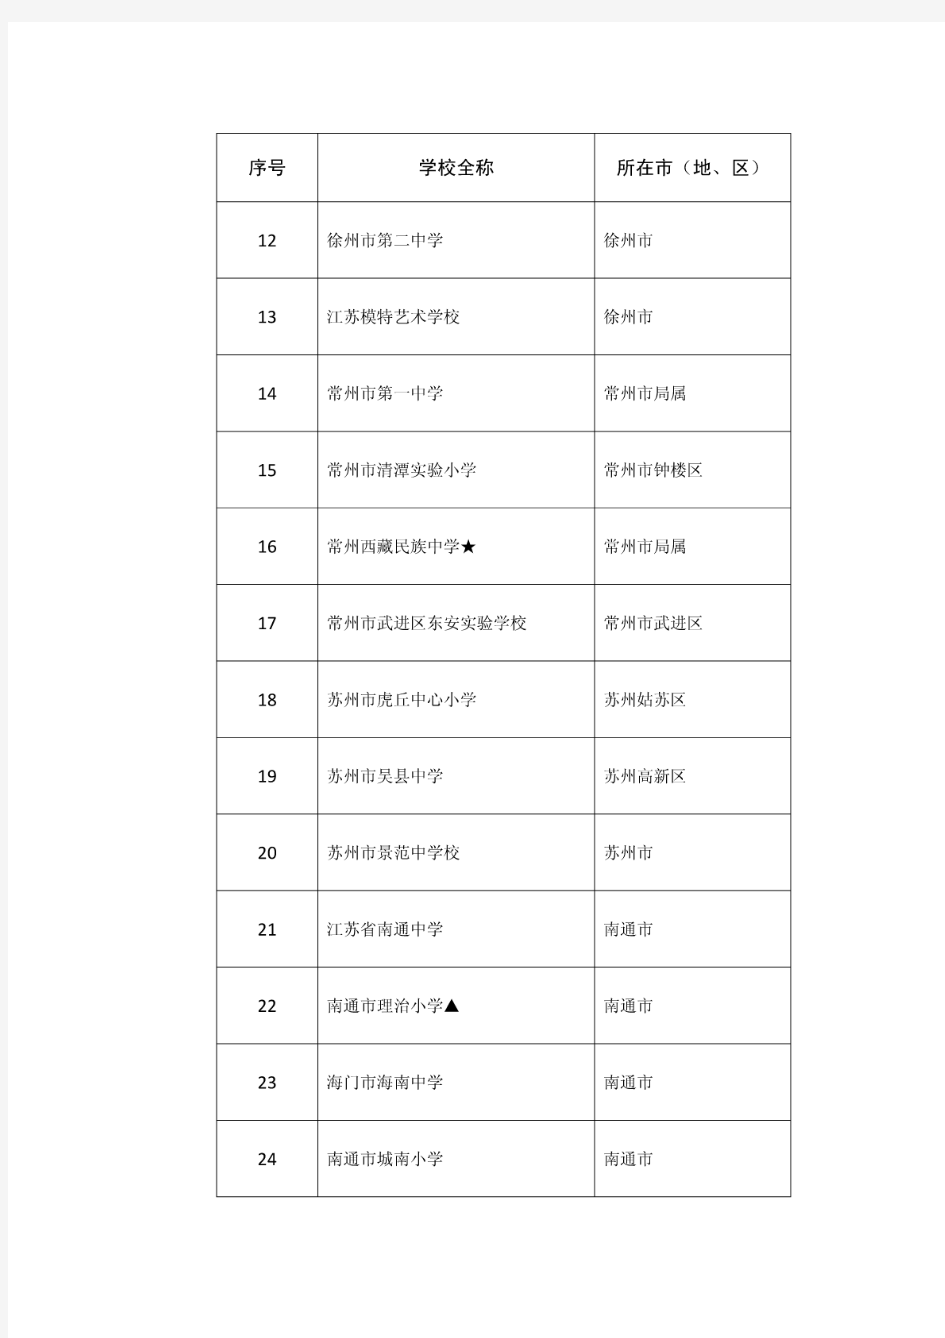 江苏省国防教育特色学校推荐名单(中小学)